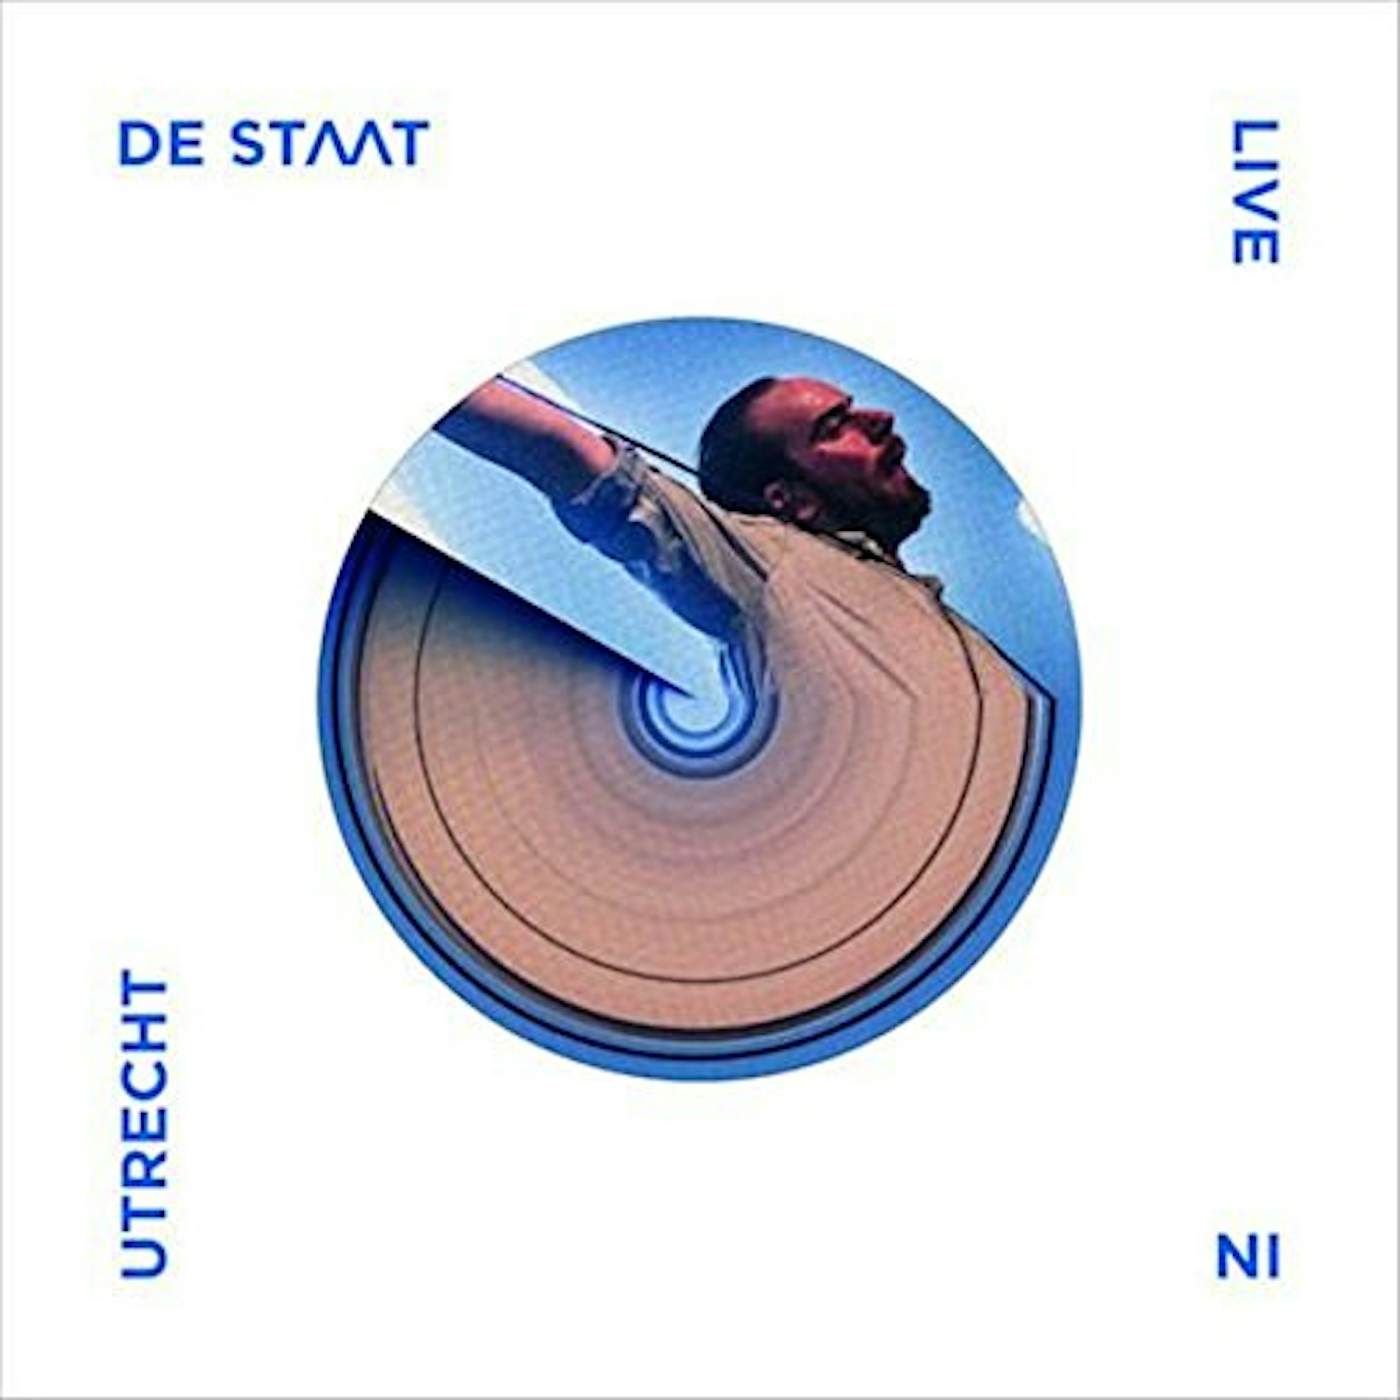 De Staat O: LIVE IN UTRECHT Vinyl Record